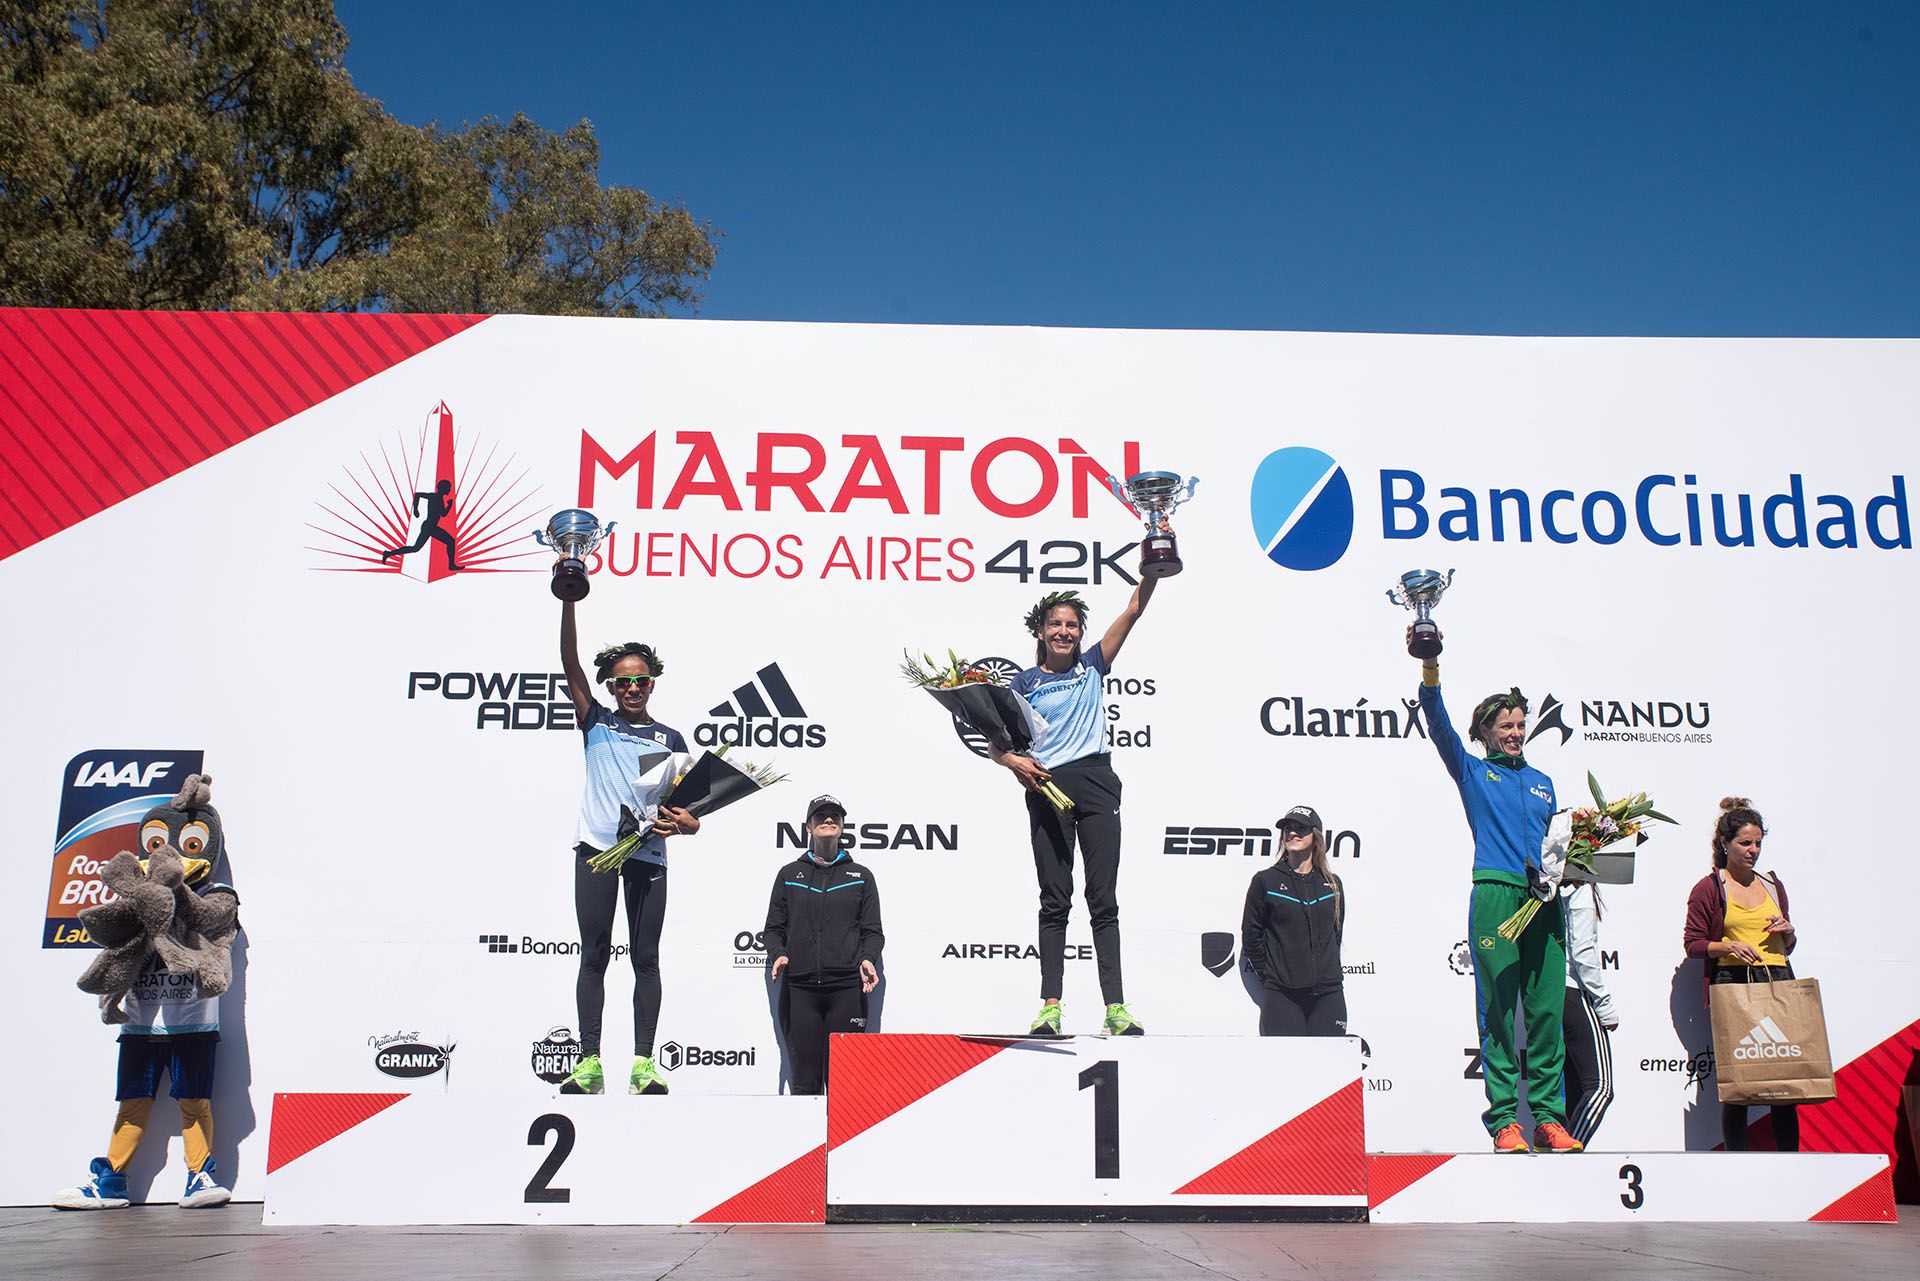 El podio de las corredoras argentinas en la maratón de Buenos Aires